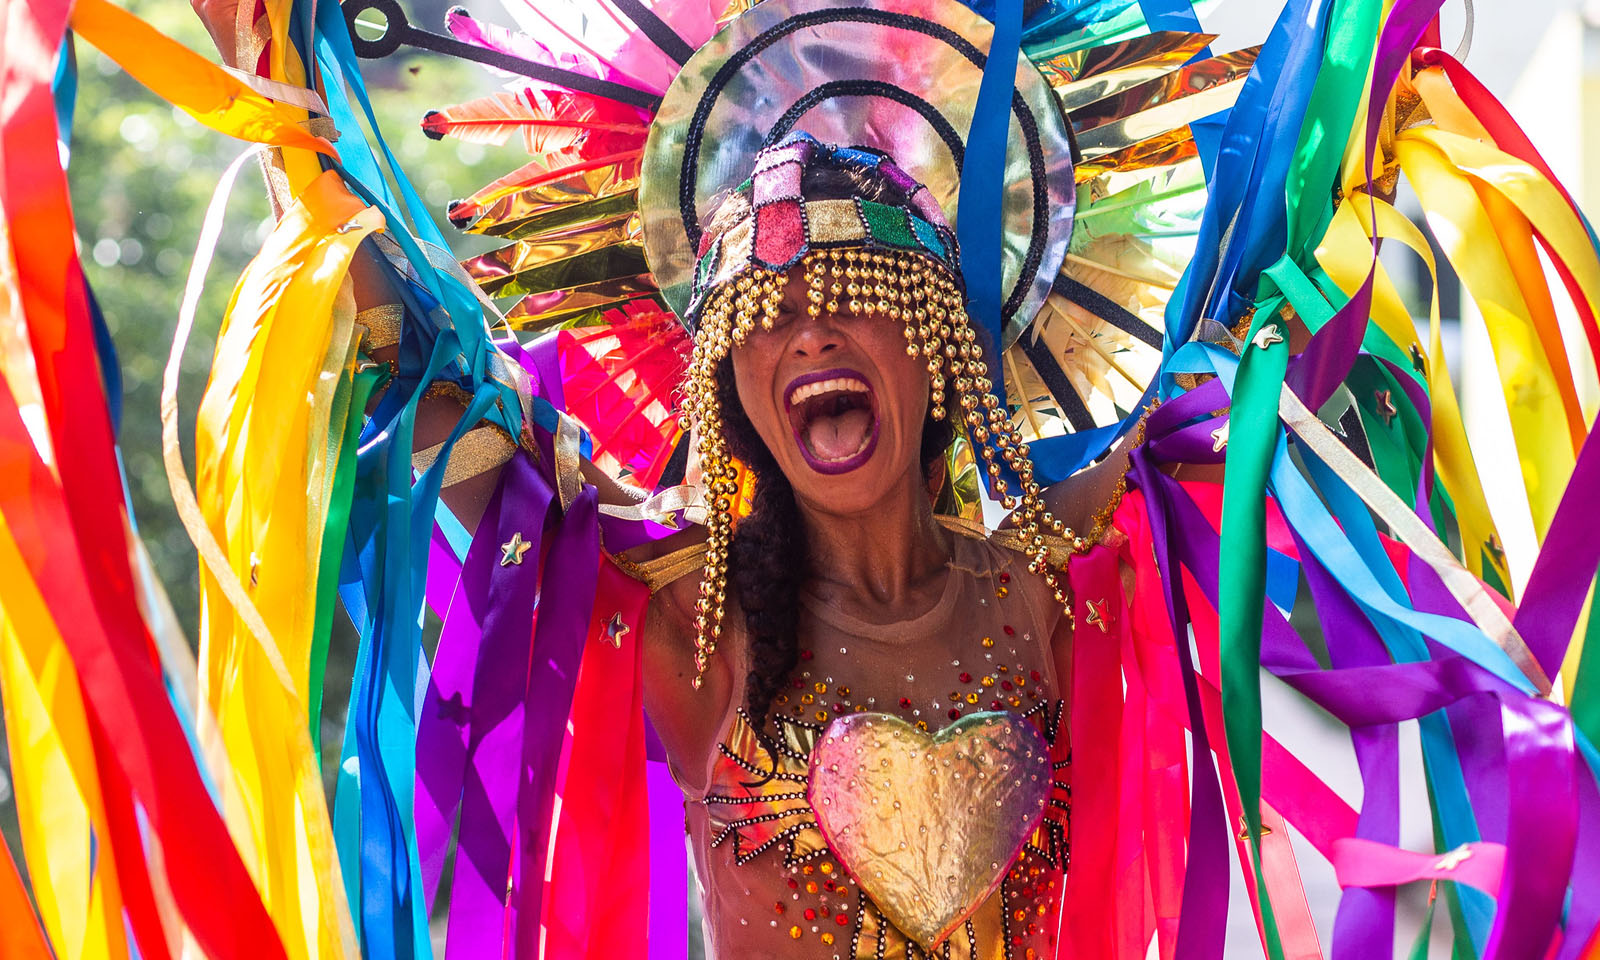 Prefeitura do Rio de Janeiro cancela carnaval 2021 devido ao coronavírus: 'sem condições de realizar'